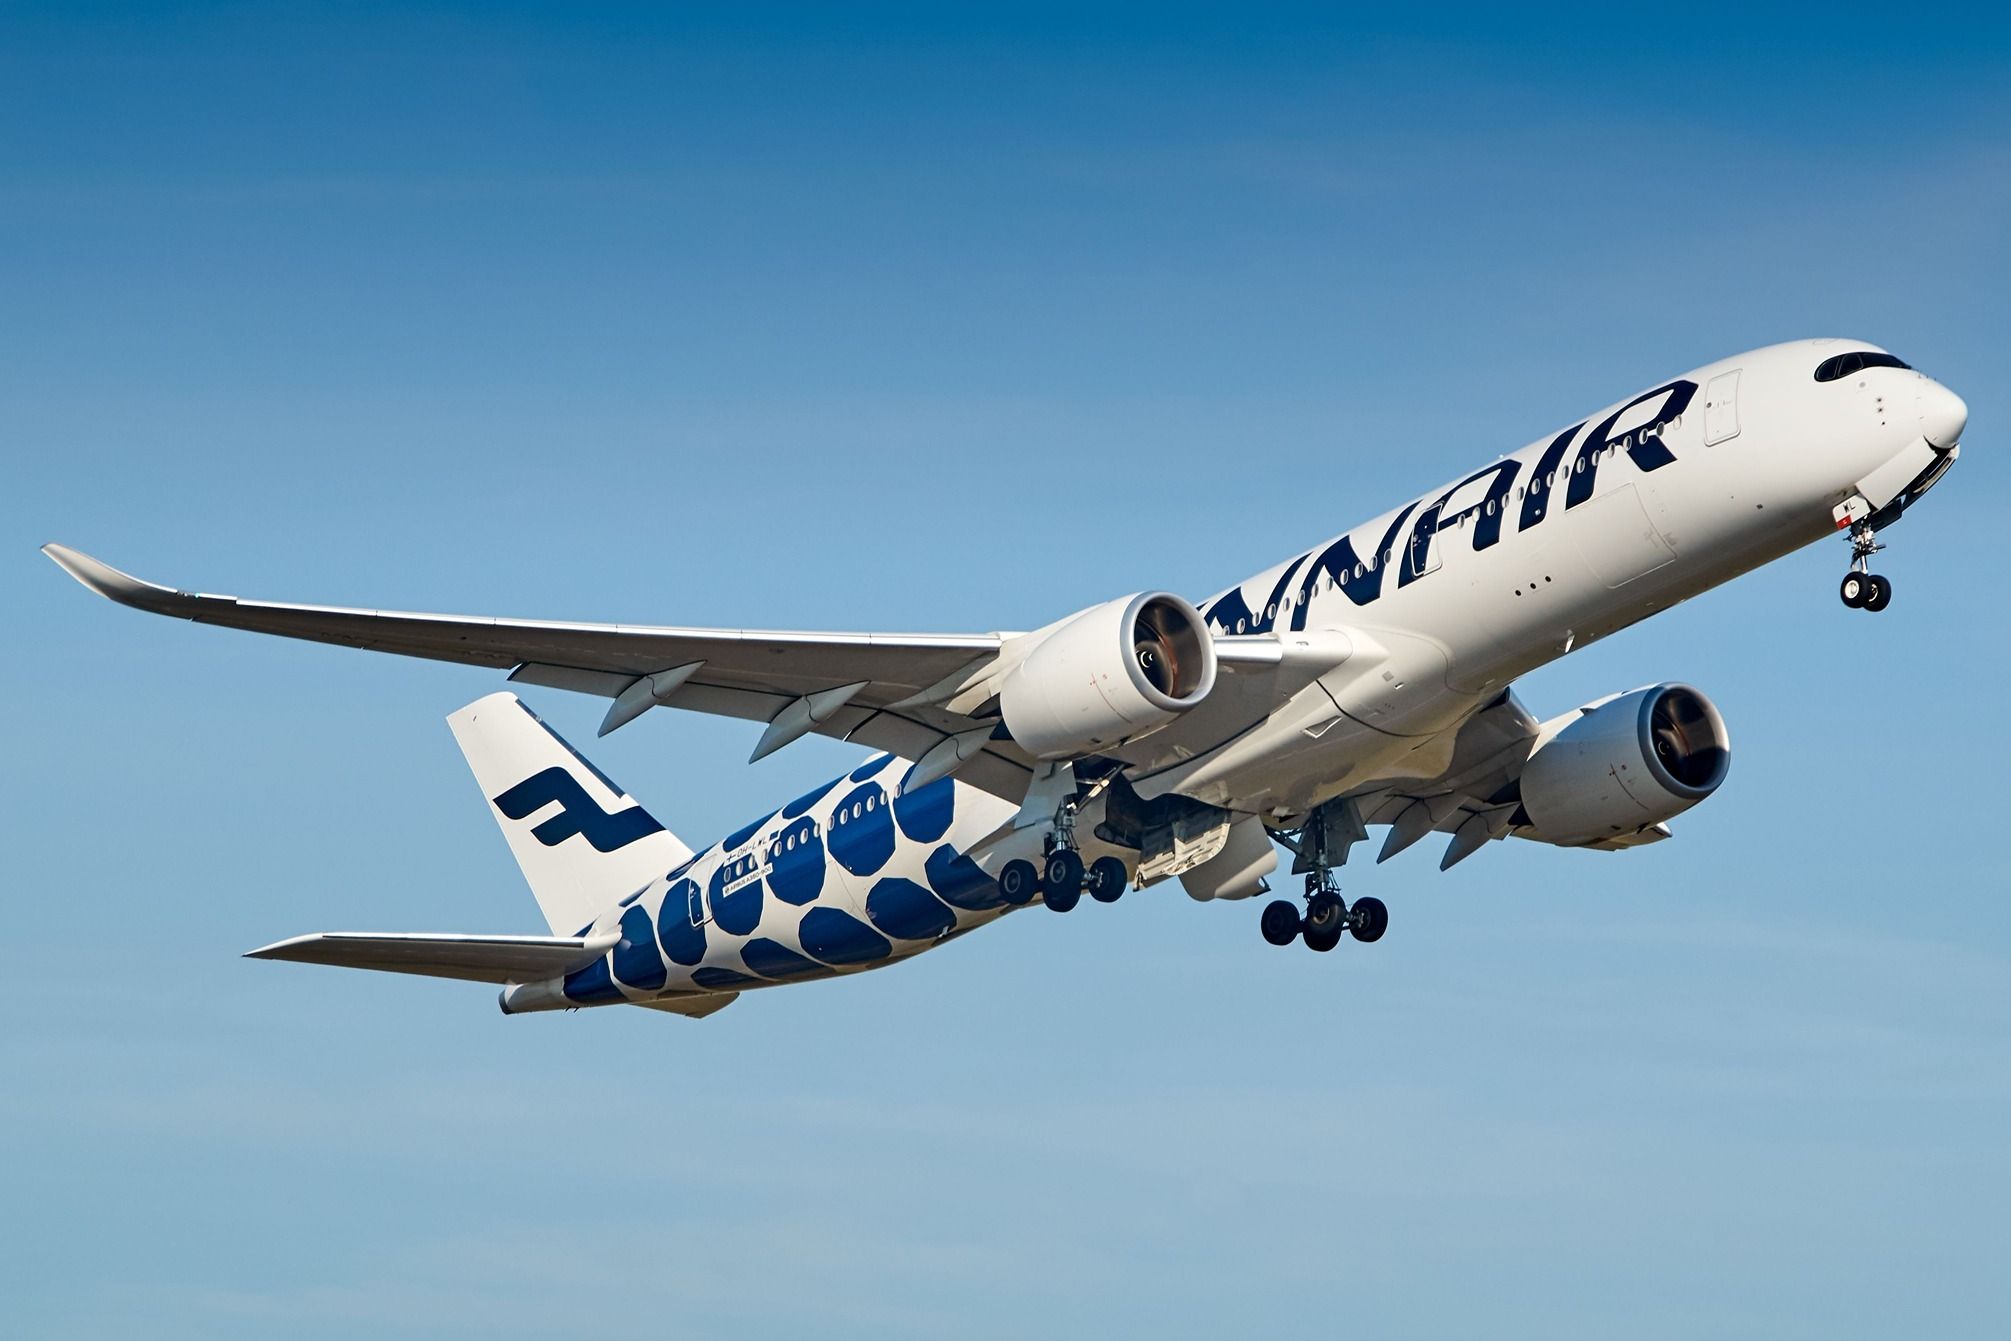 Finnair Airbus A350-900 departing